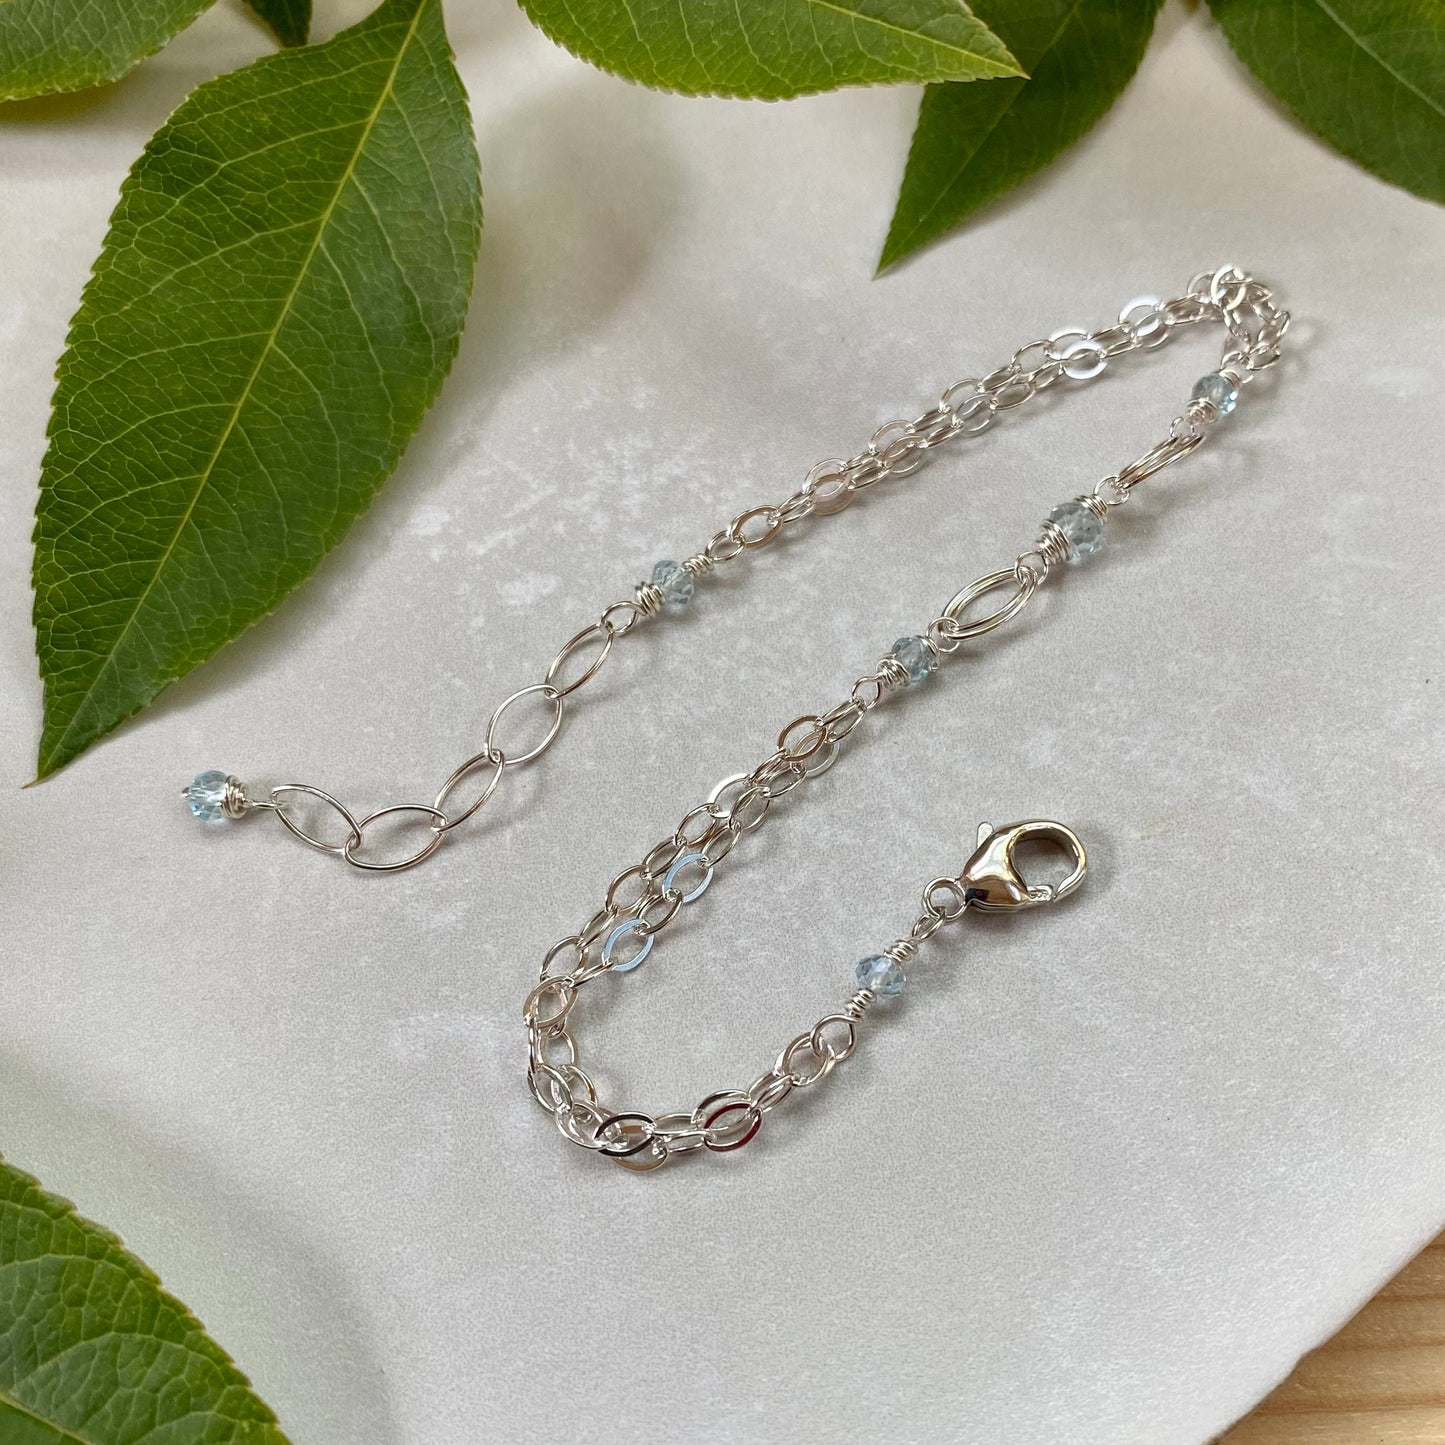 Blue Topaz Bracelet, Sterling Silver Beaded Blue Gemstone Birthstone, Elegant Bohemian Birthday Gift for December